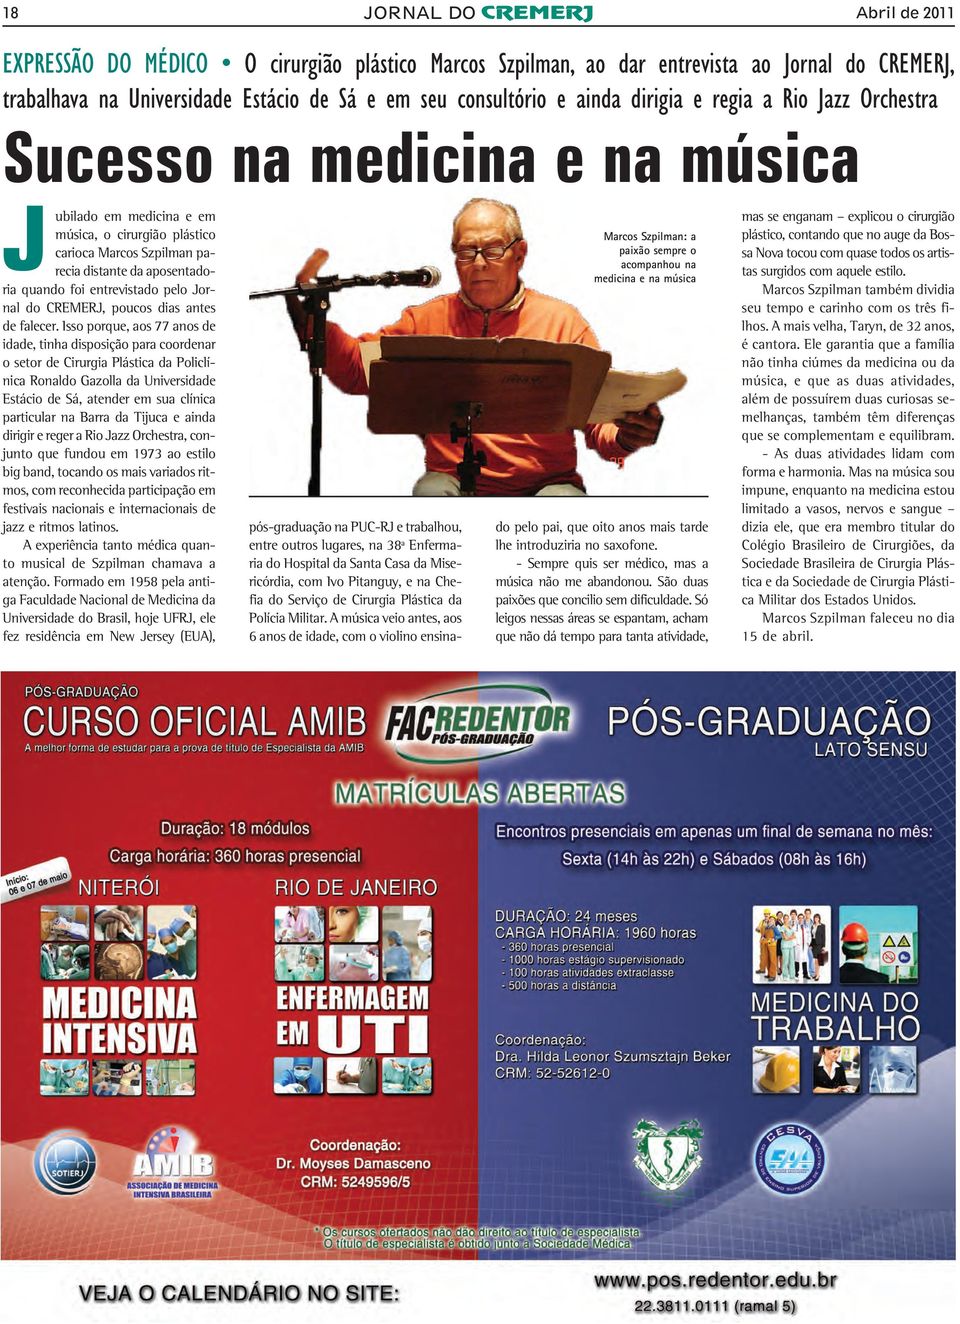 entrevistado pelo Jornal do CREMERJ, poucos dias antes de falecer.